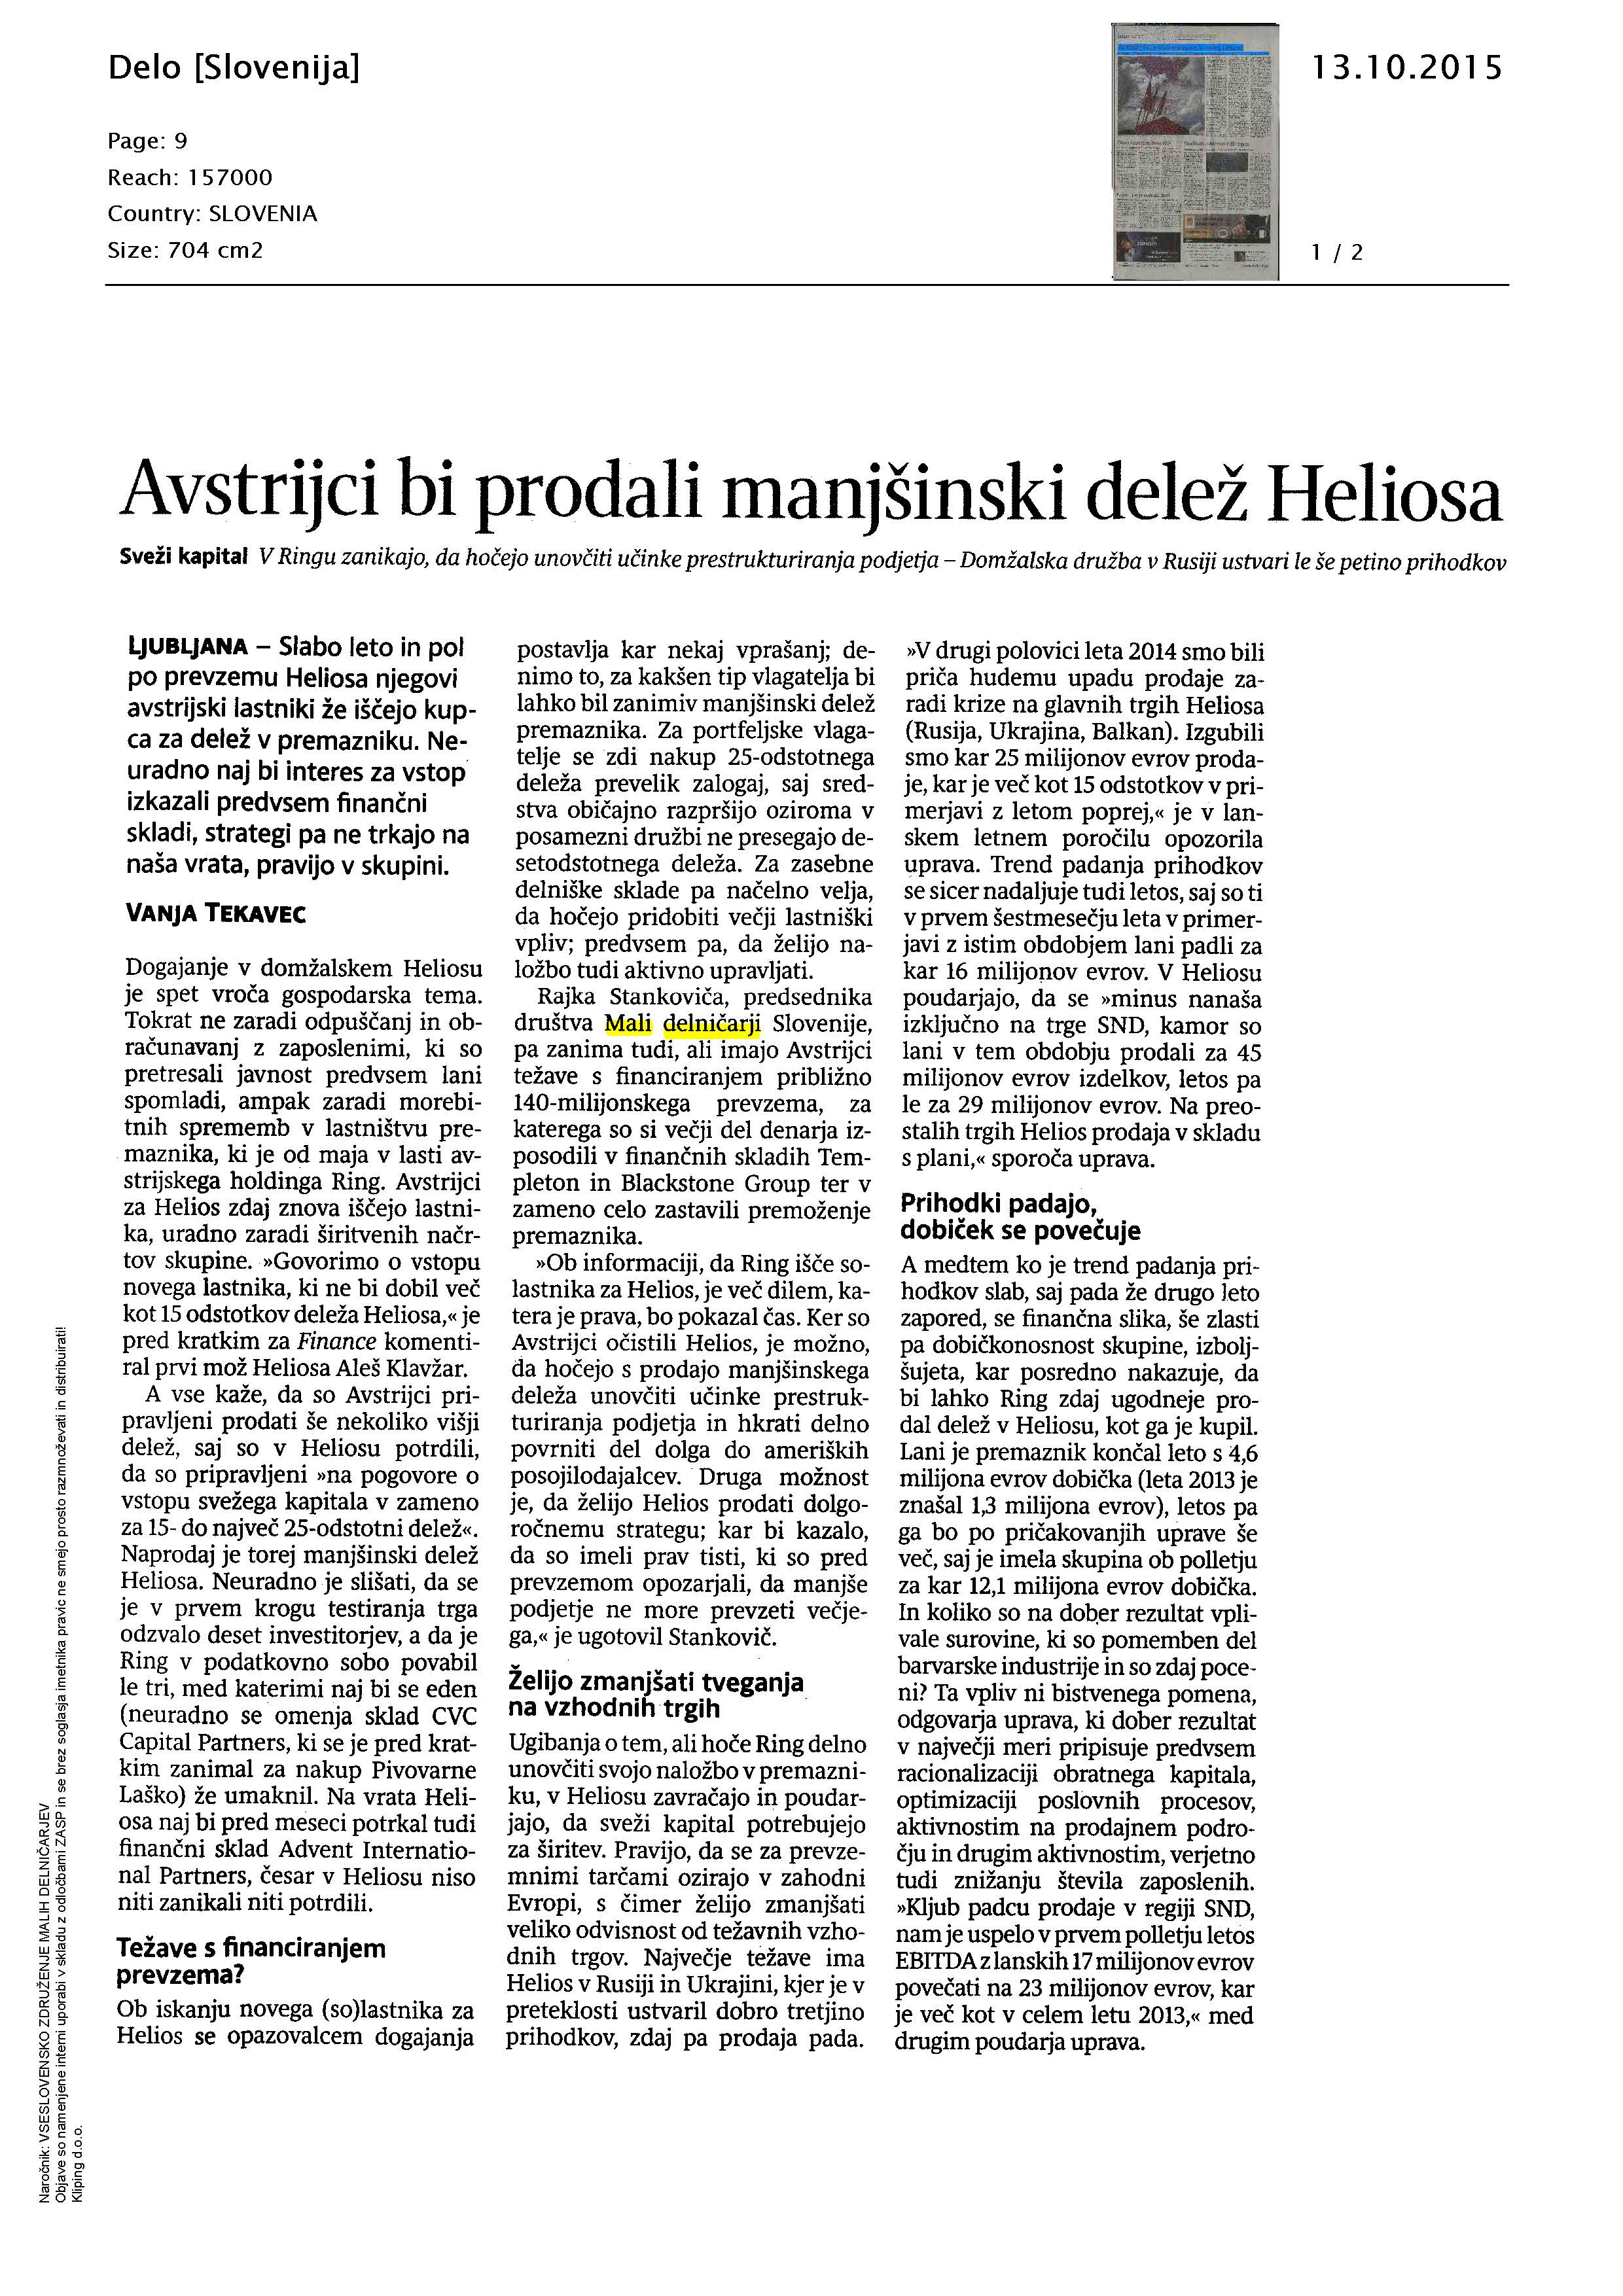 Avstrijci bi_prodali_manjšinski_delež_Heliosa (1)_Page_1